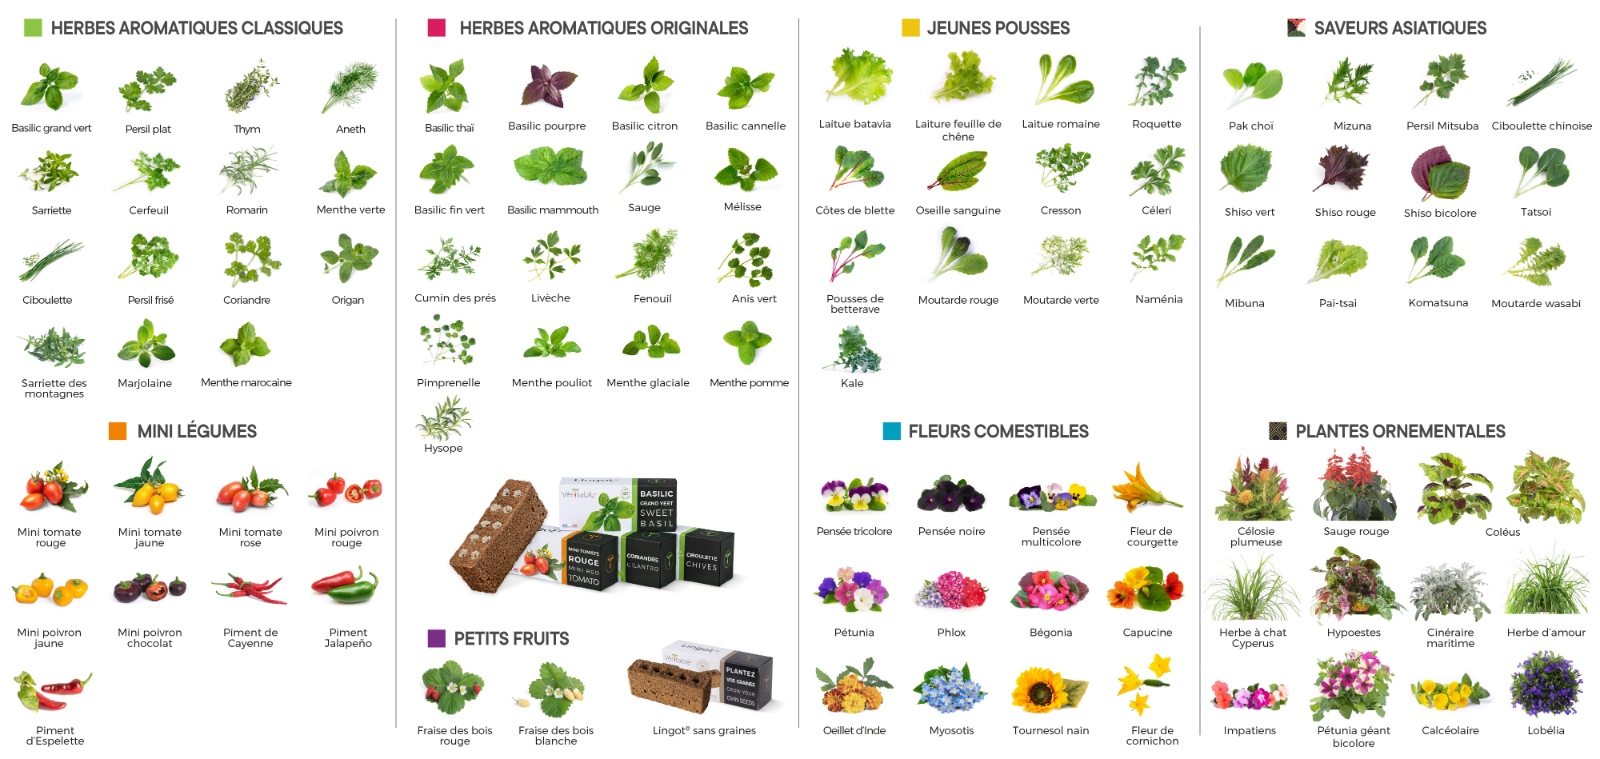 Toutes les variétés de plantes disponibles chez Véritable